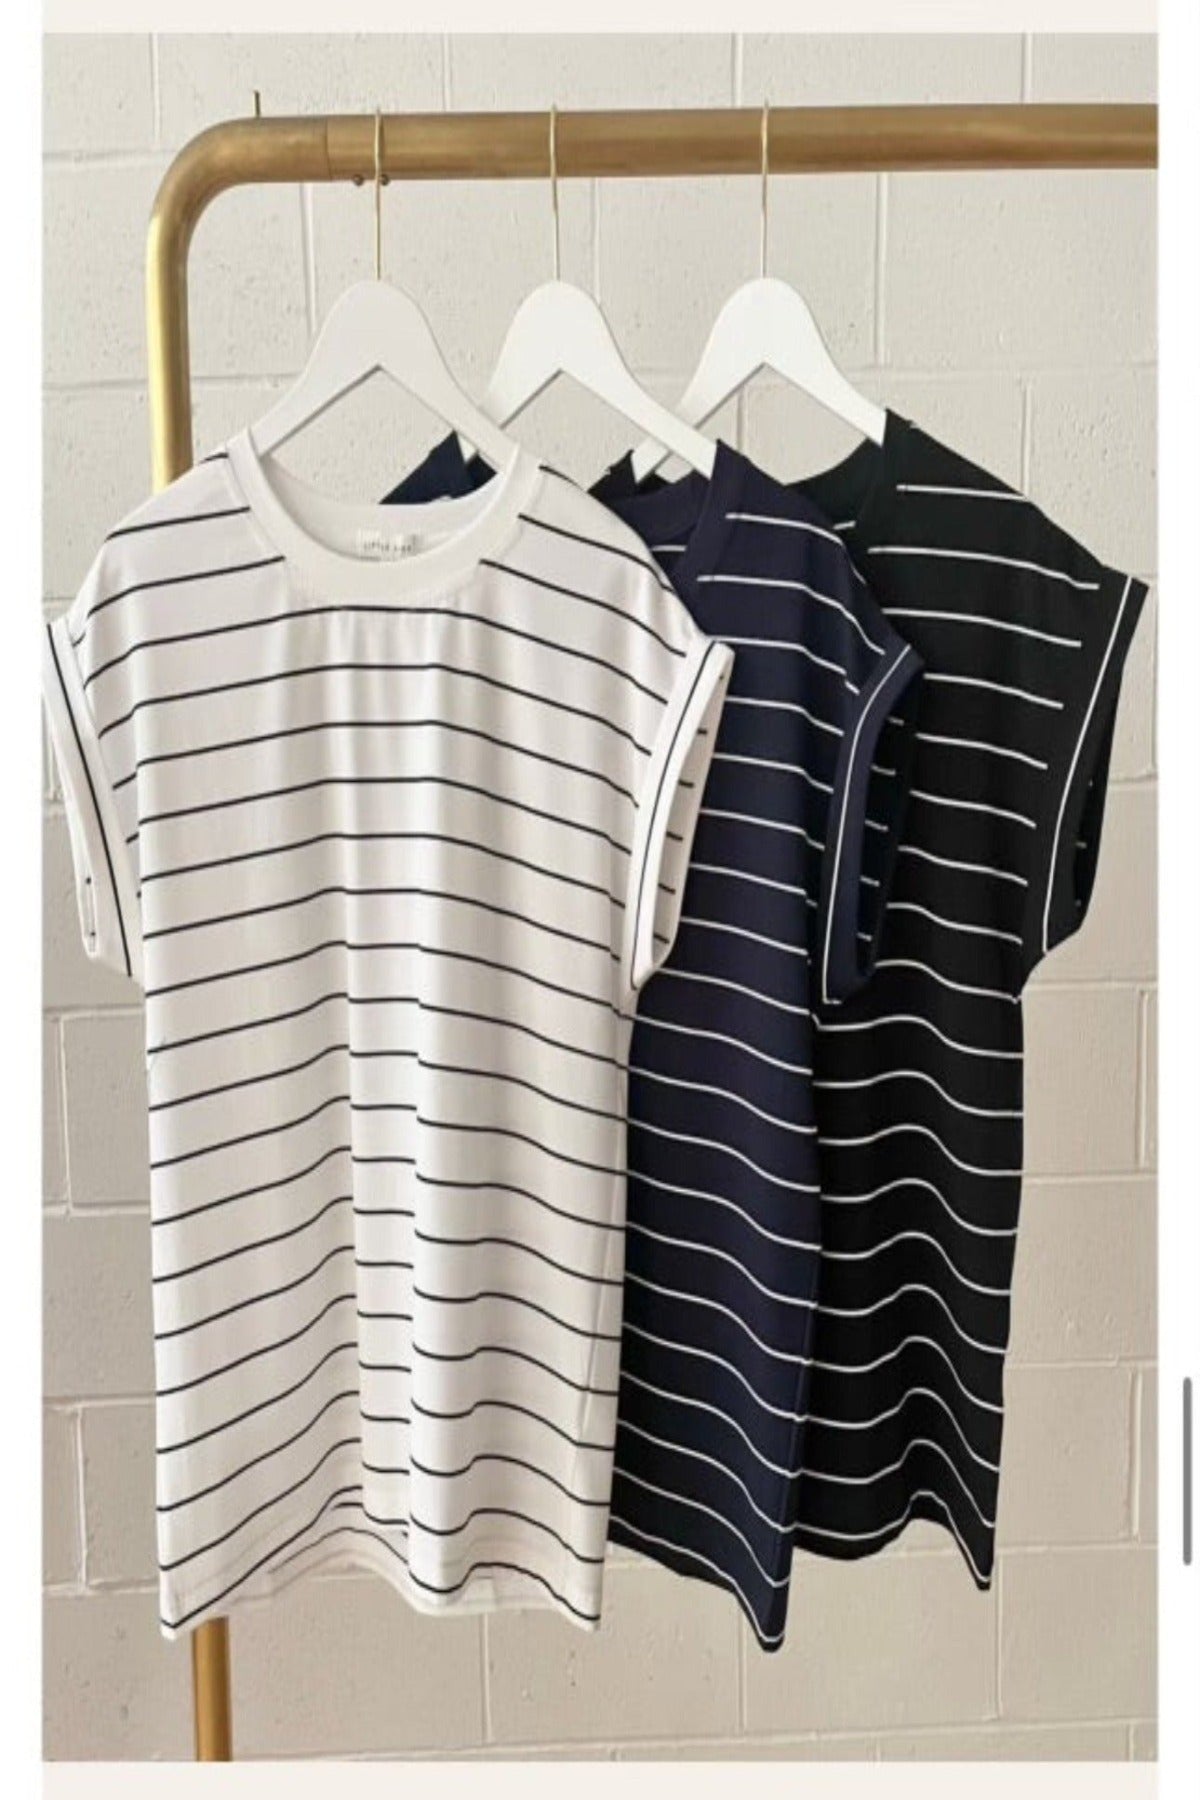 Rhodes Tee - Black with White Stripe - Sare StoreLittle LiesT-shirt